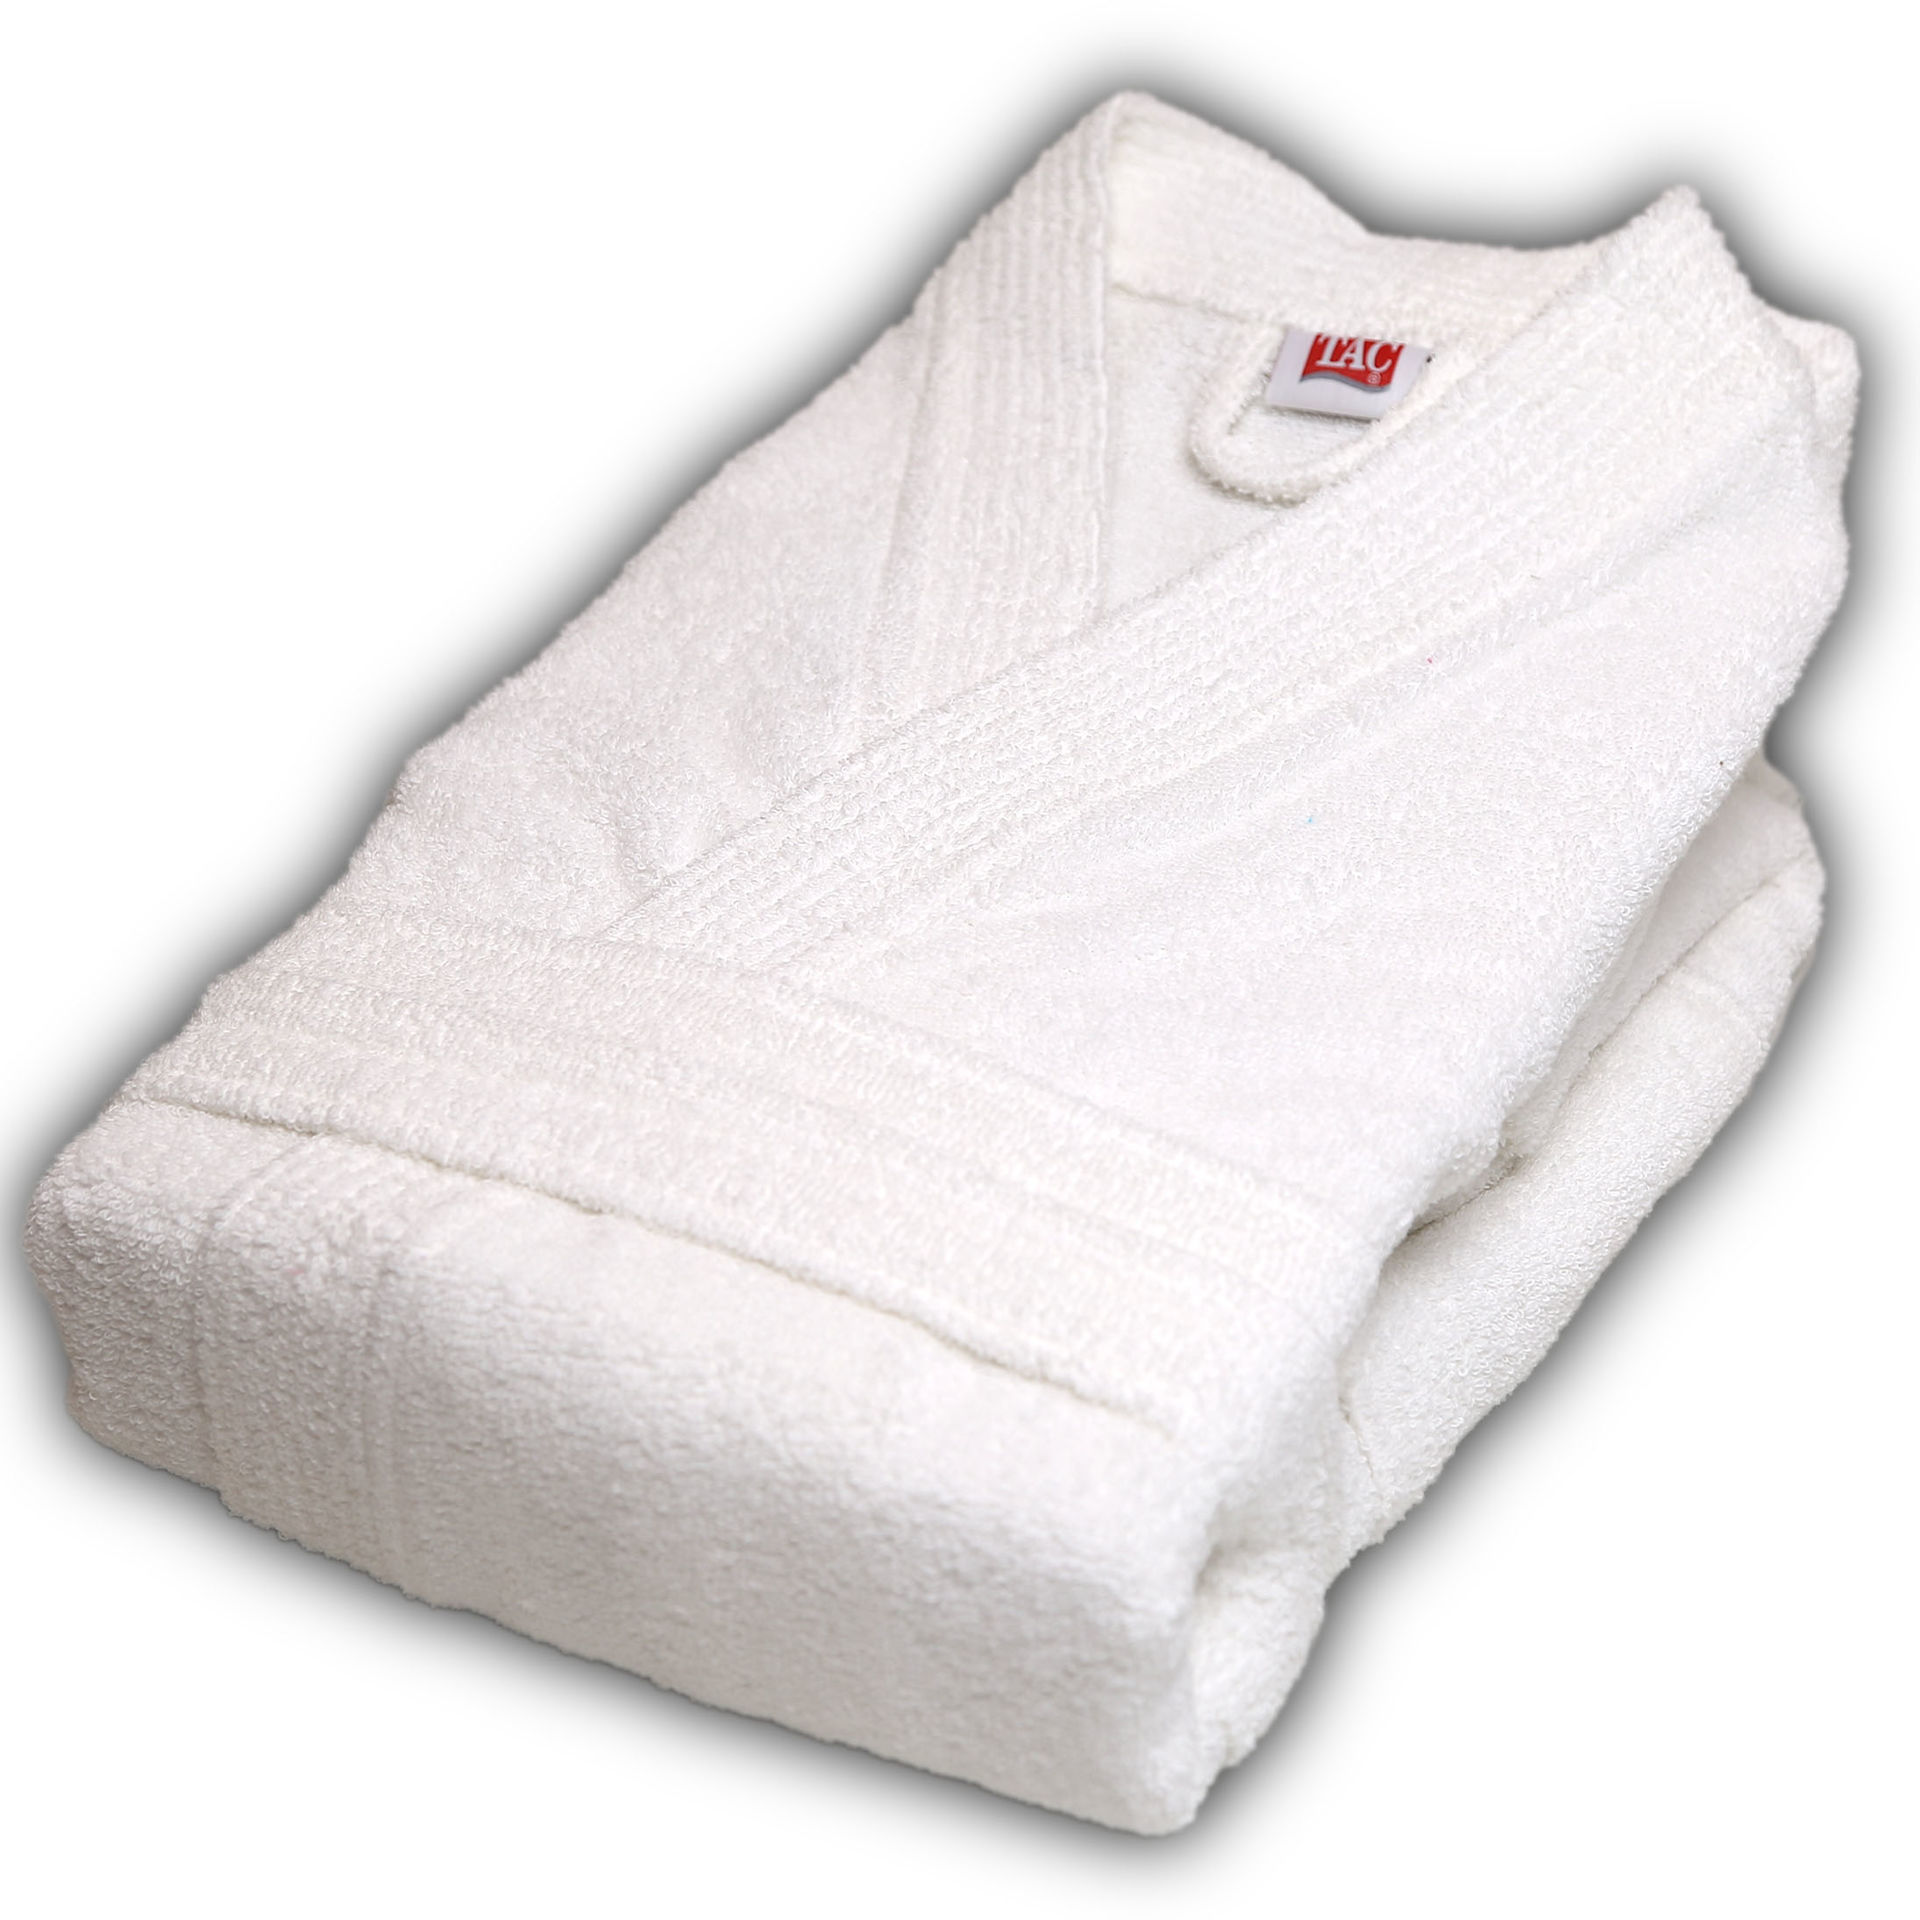 حوله 6 تکه جعبه ای بیسیک تاچ طرح ریبسال TAC Kristal 6pcs Towel Set Basic Fusiya-White Ribesal